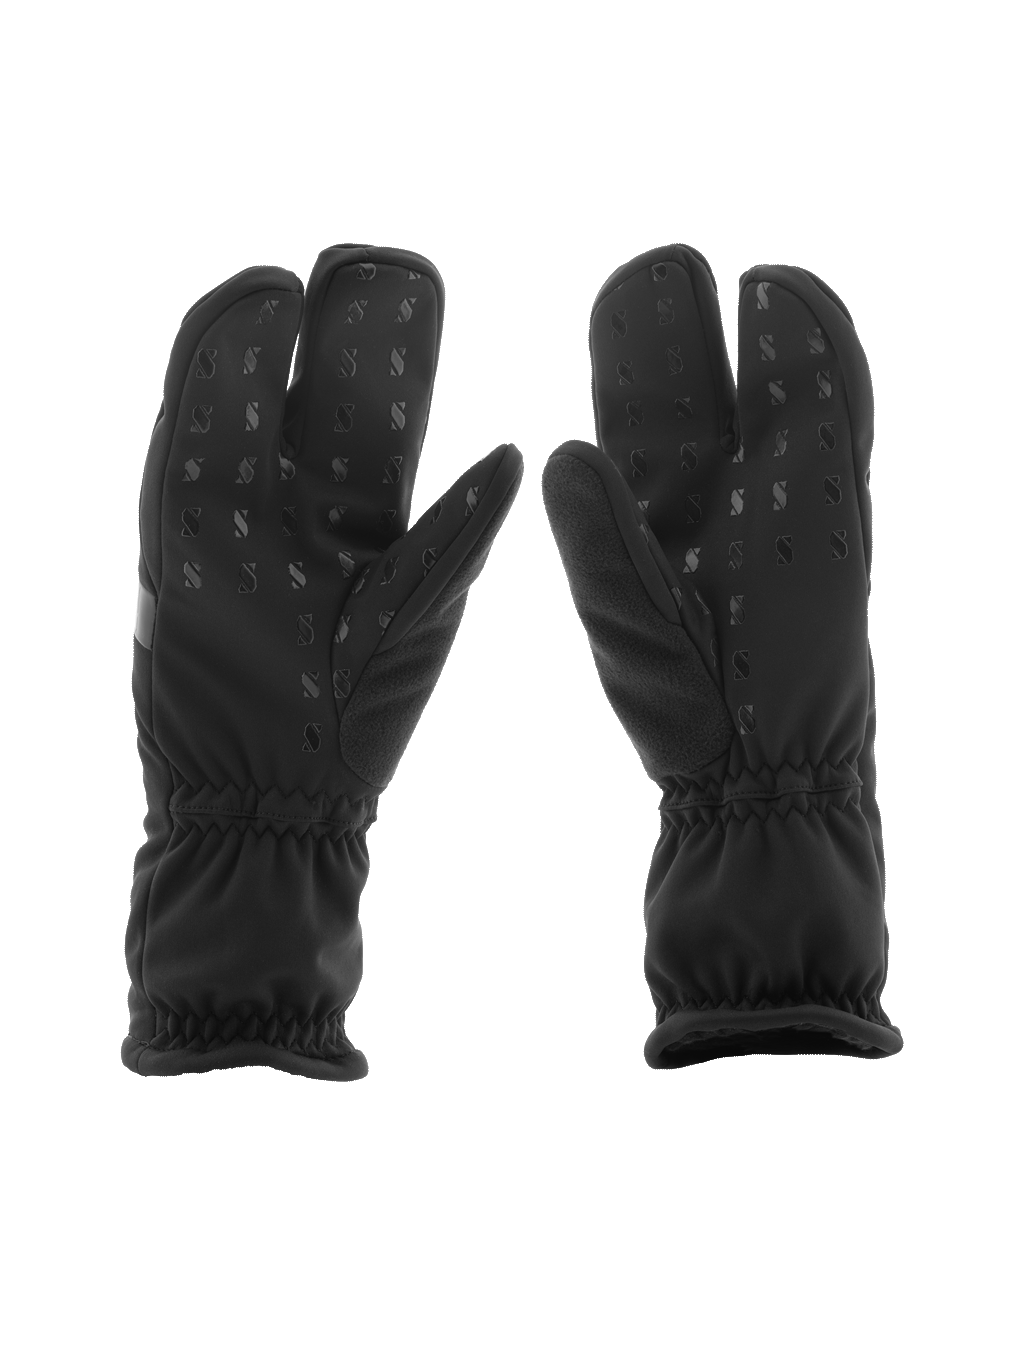 Lobster Glove